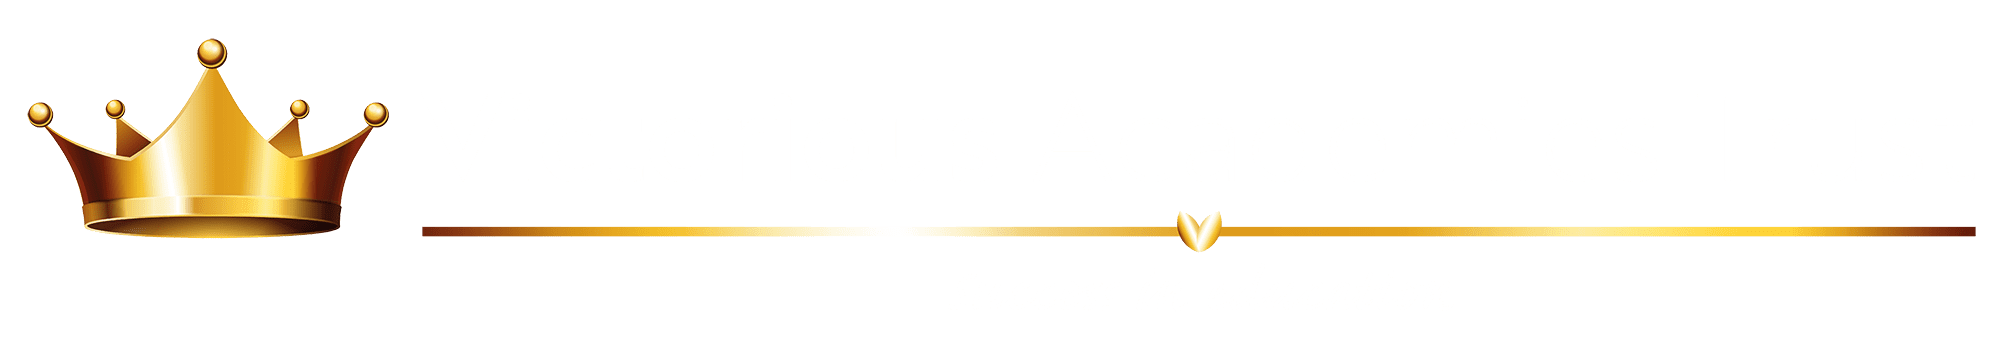 Victorious-Academies-logos-white-text